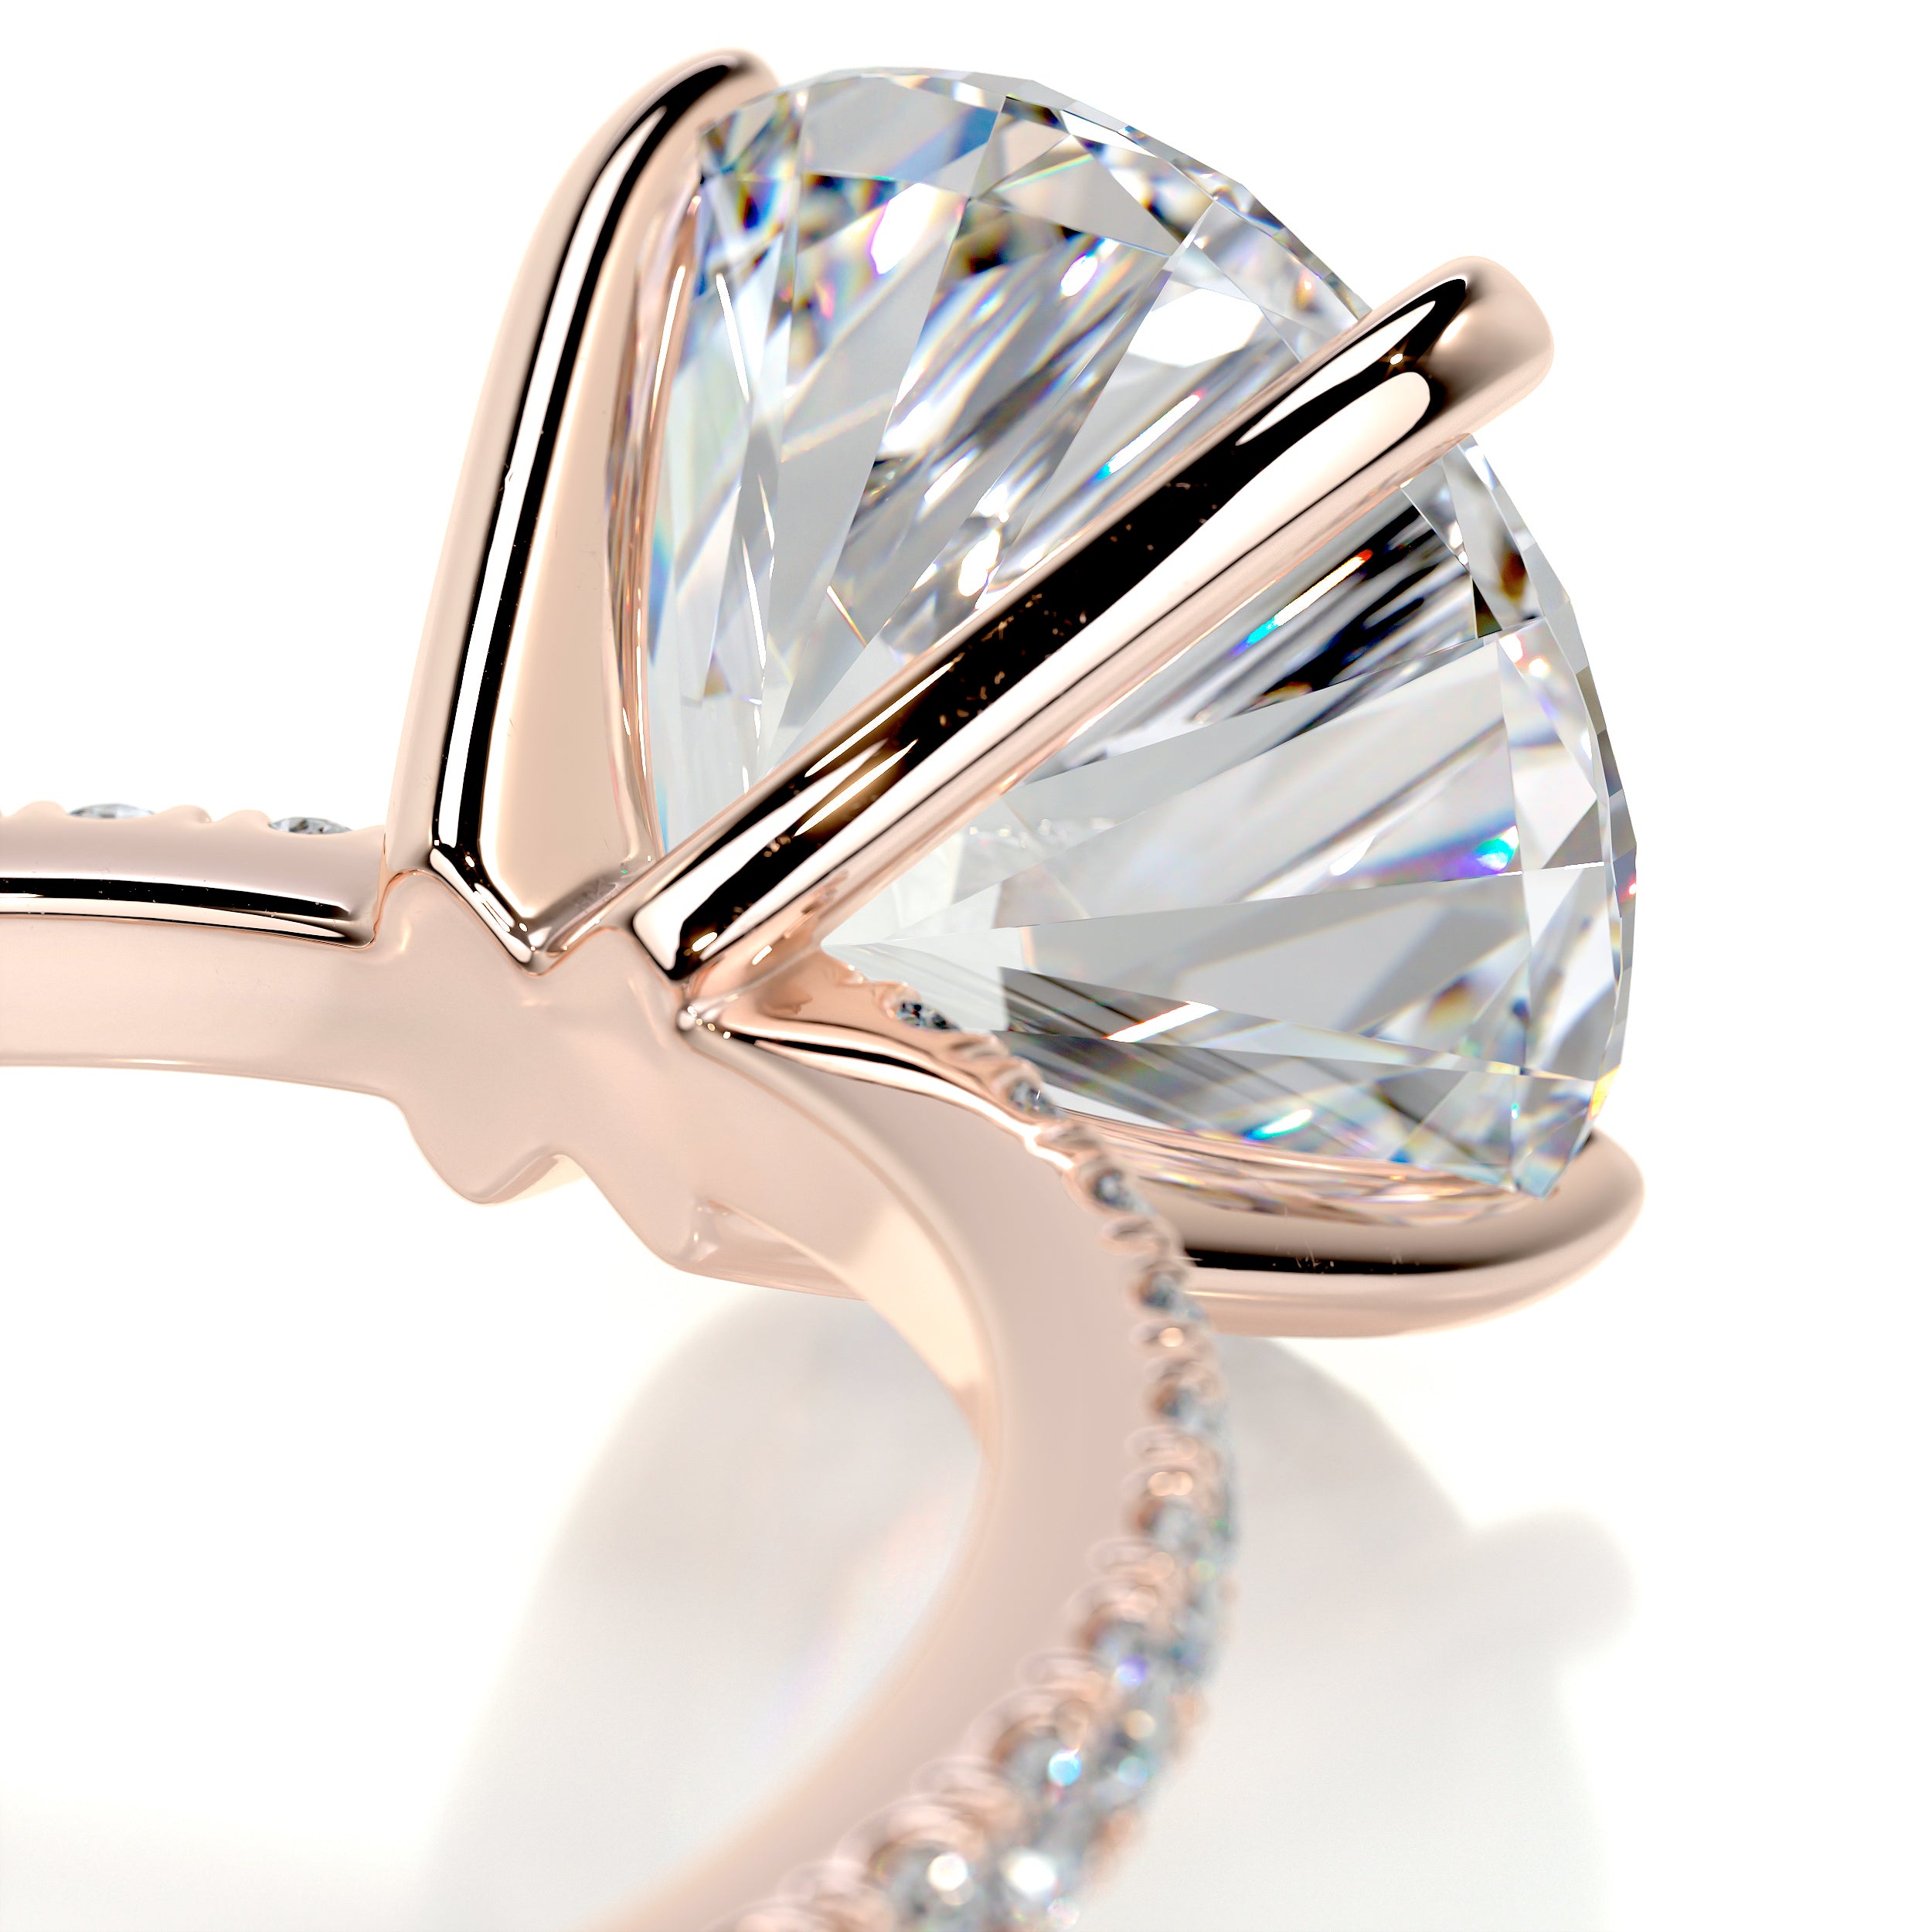 Stephanie Moissanite & Diamonds Ring -14K Rose Gold